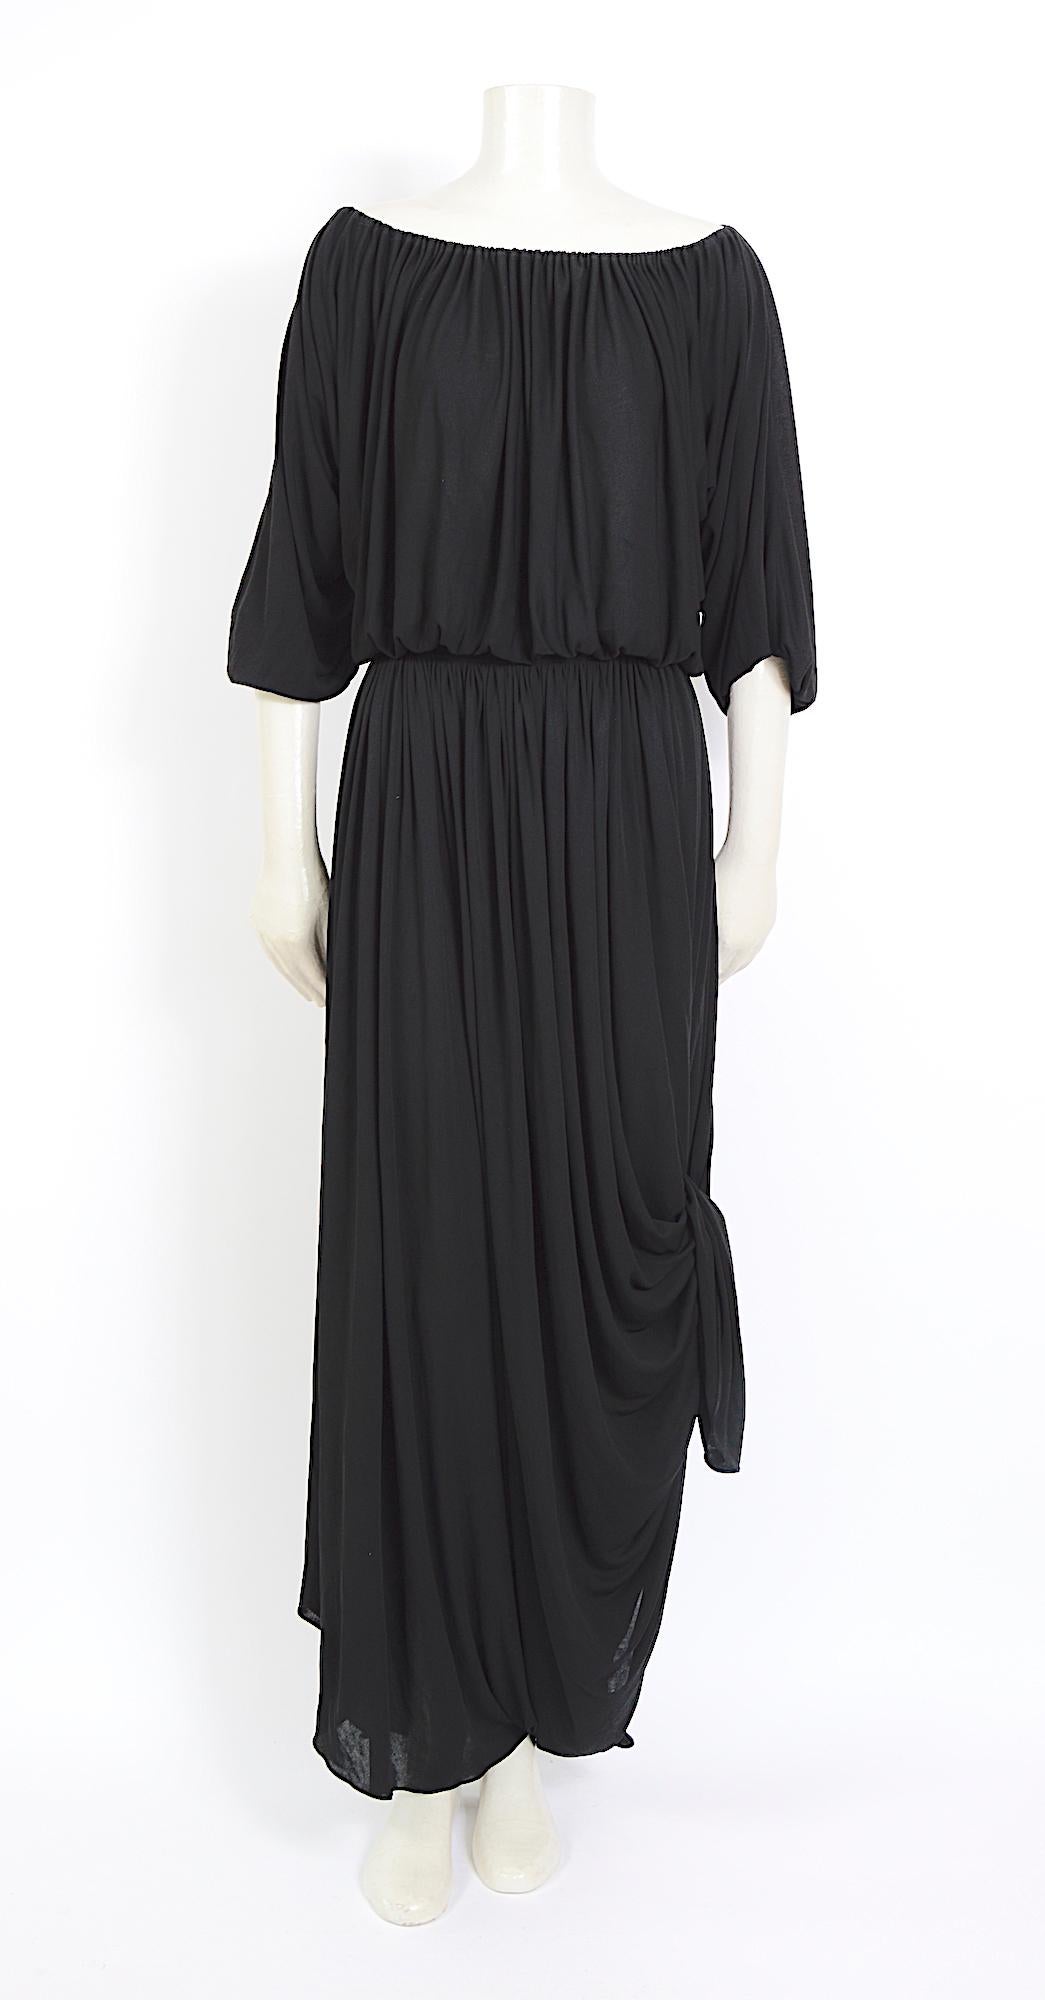 Robe vintage Collectional Nina Ricci des années 1970.
J'adore les options de style drapé sur cette robe vintage des années 1970 de Nina Ricci. Réalisée dans une magnifique robe en jersey de viscose noire. Quelques minuscules trous de la taille d'une